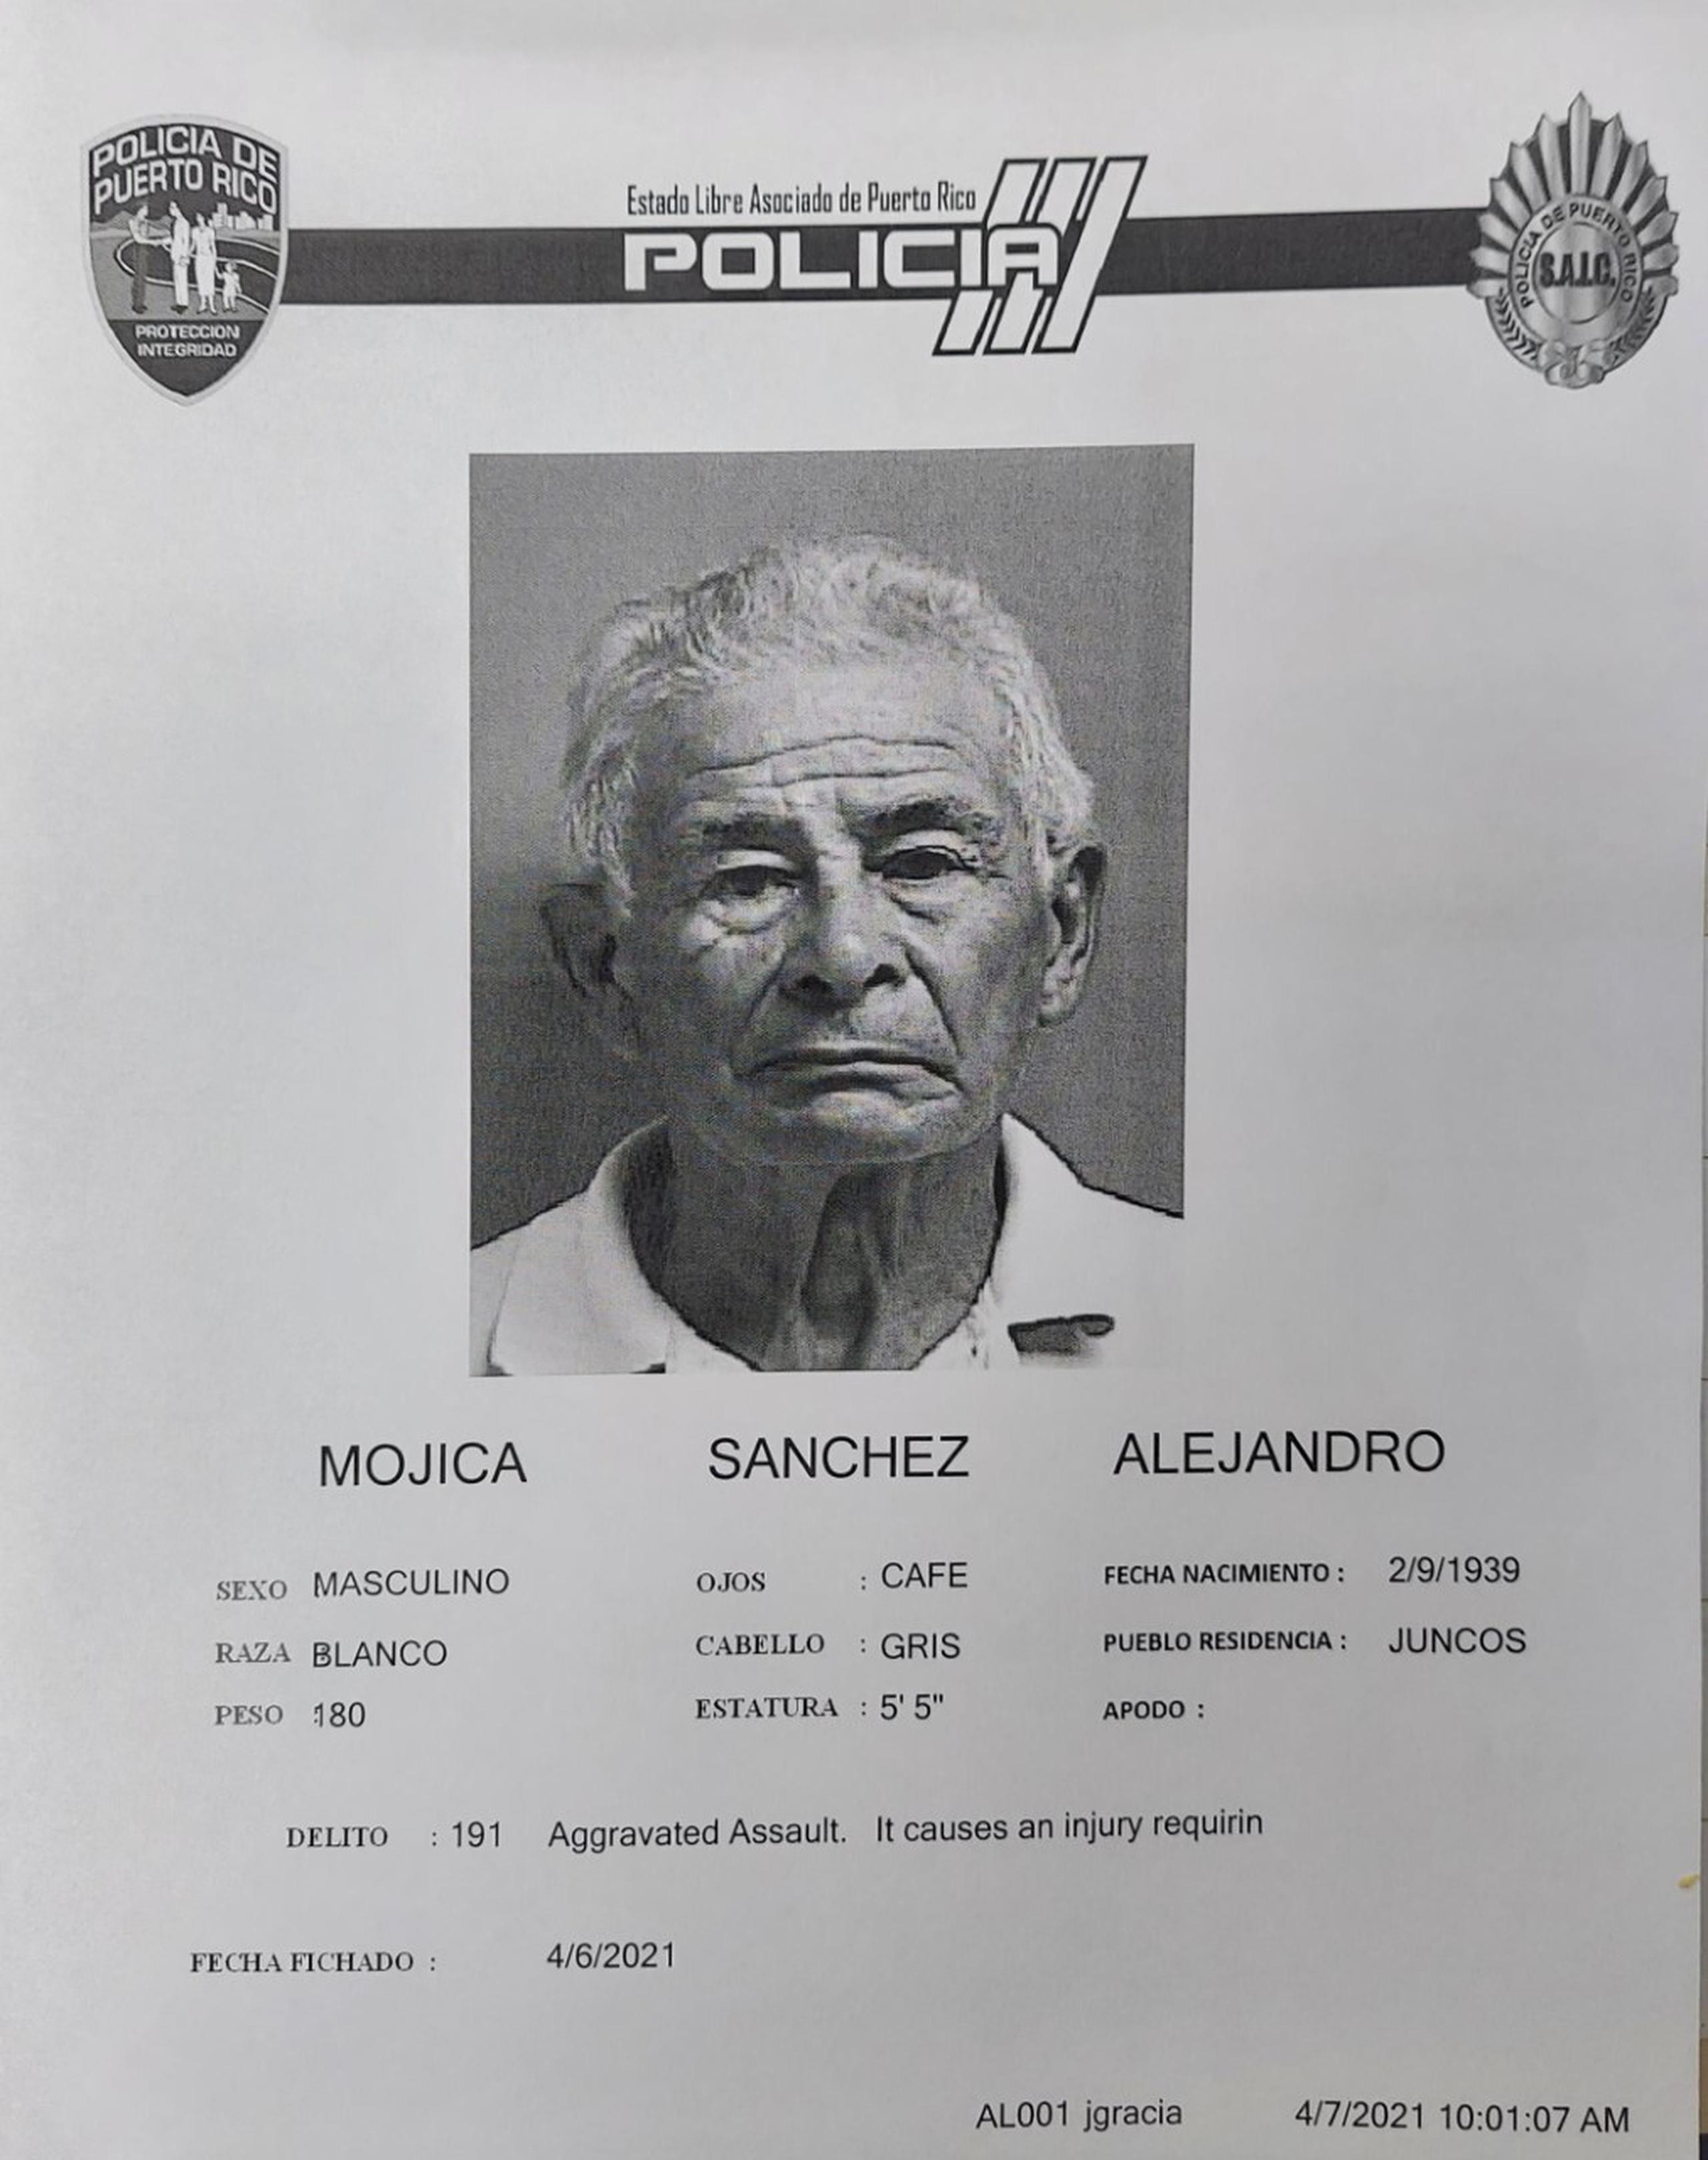 Alejandro Mojica Sánchez de 82 años, fue acusado los delitos de maltrato a personas de edad avanzada, agresión agravada y violación al artículo 6.06 de la Ley de Armas de Puerto Rico.